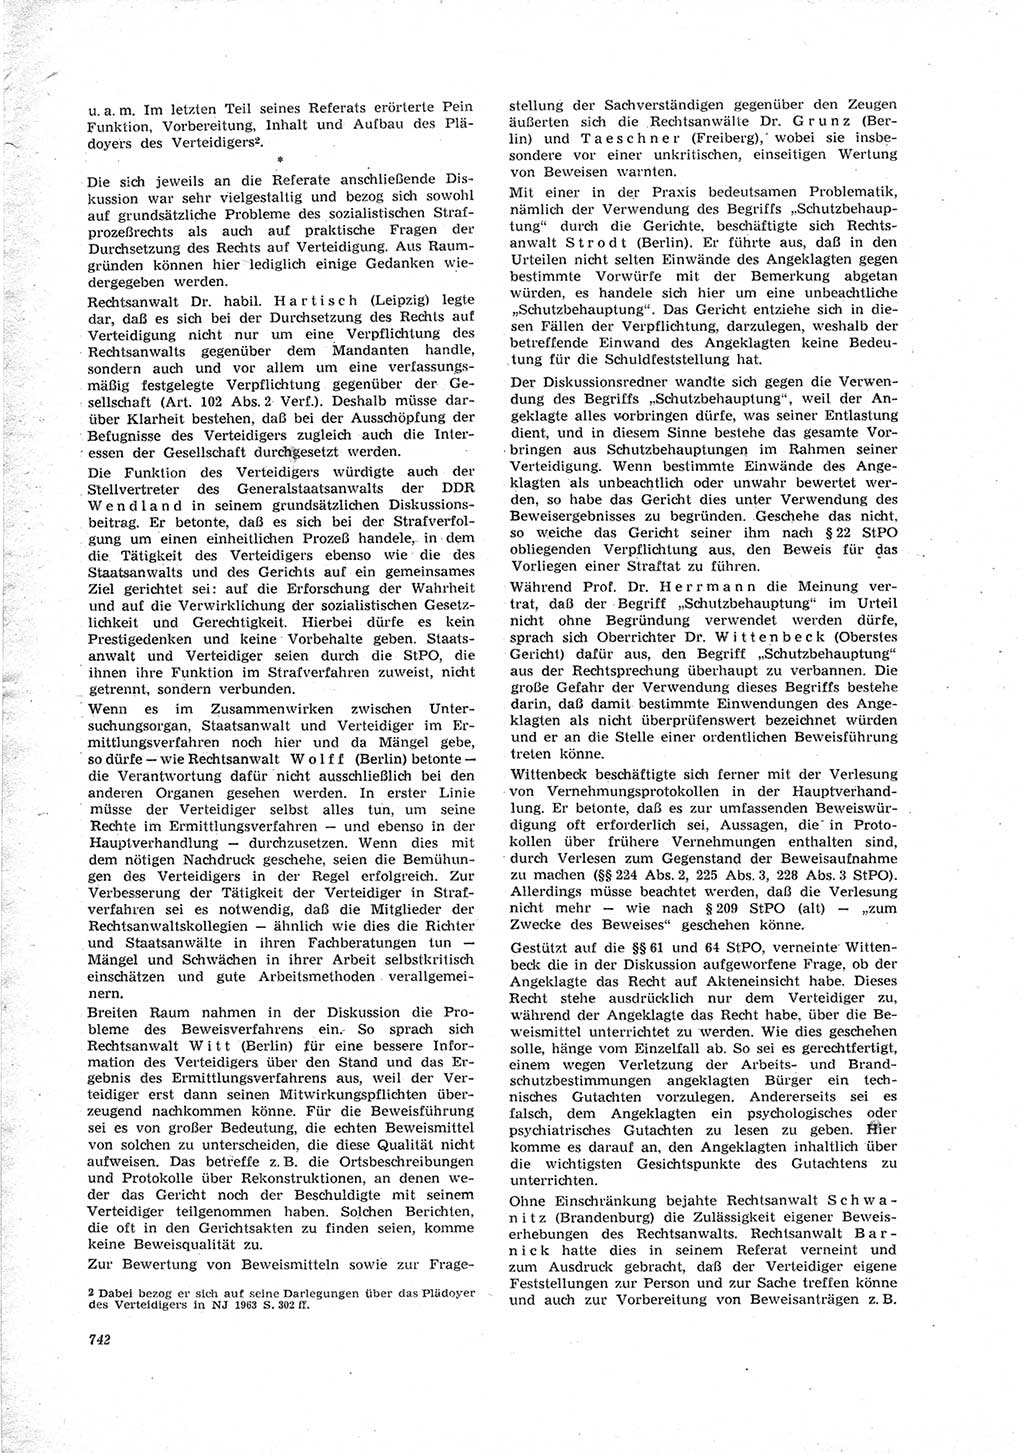 Neue Justiz (NJ), Zeitschrift für Recht und Rechtswissenschaft [Deutsche Demokratische Republik (DDR)], 23. Jahrgang 1969, Seite 742 (NJ DDR 1969, S. 742)